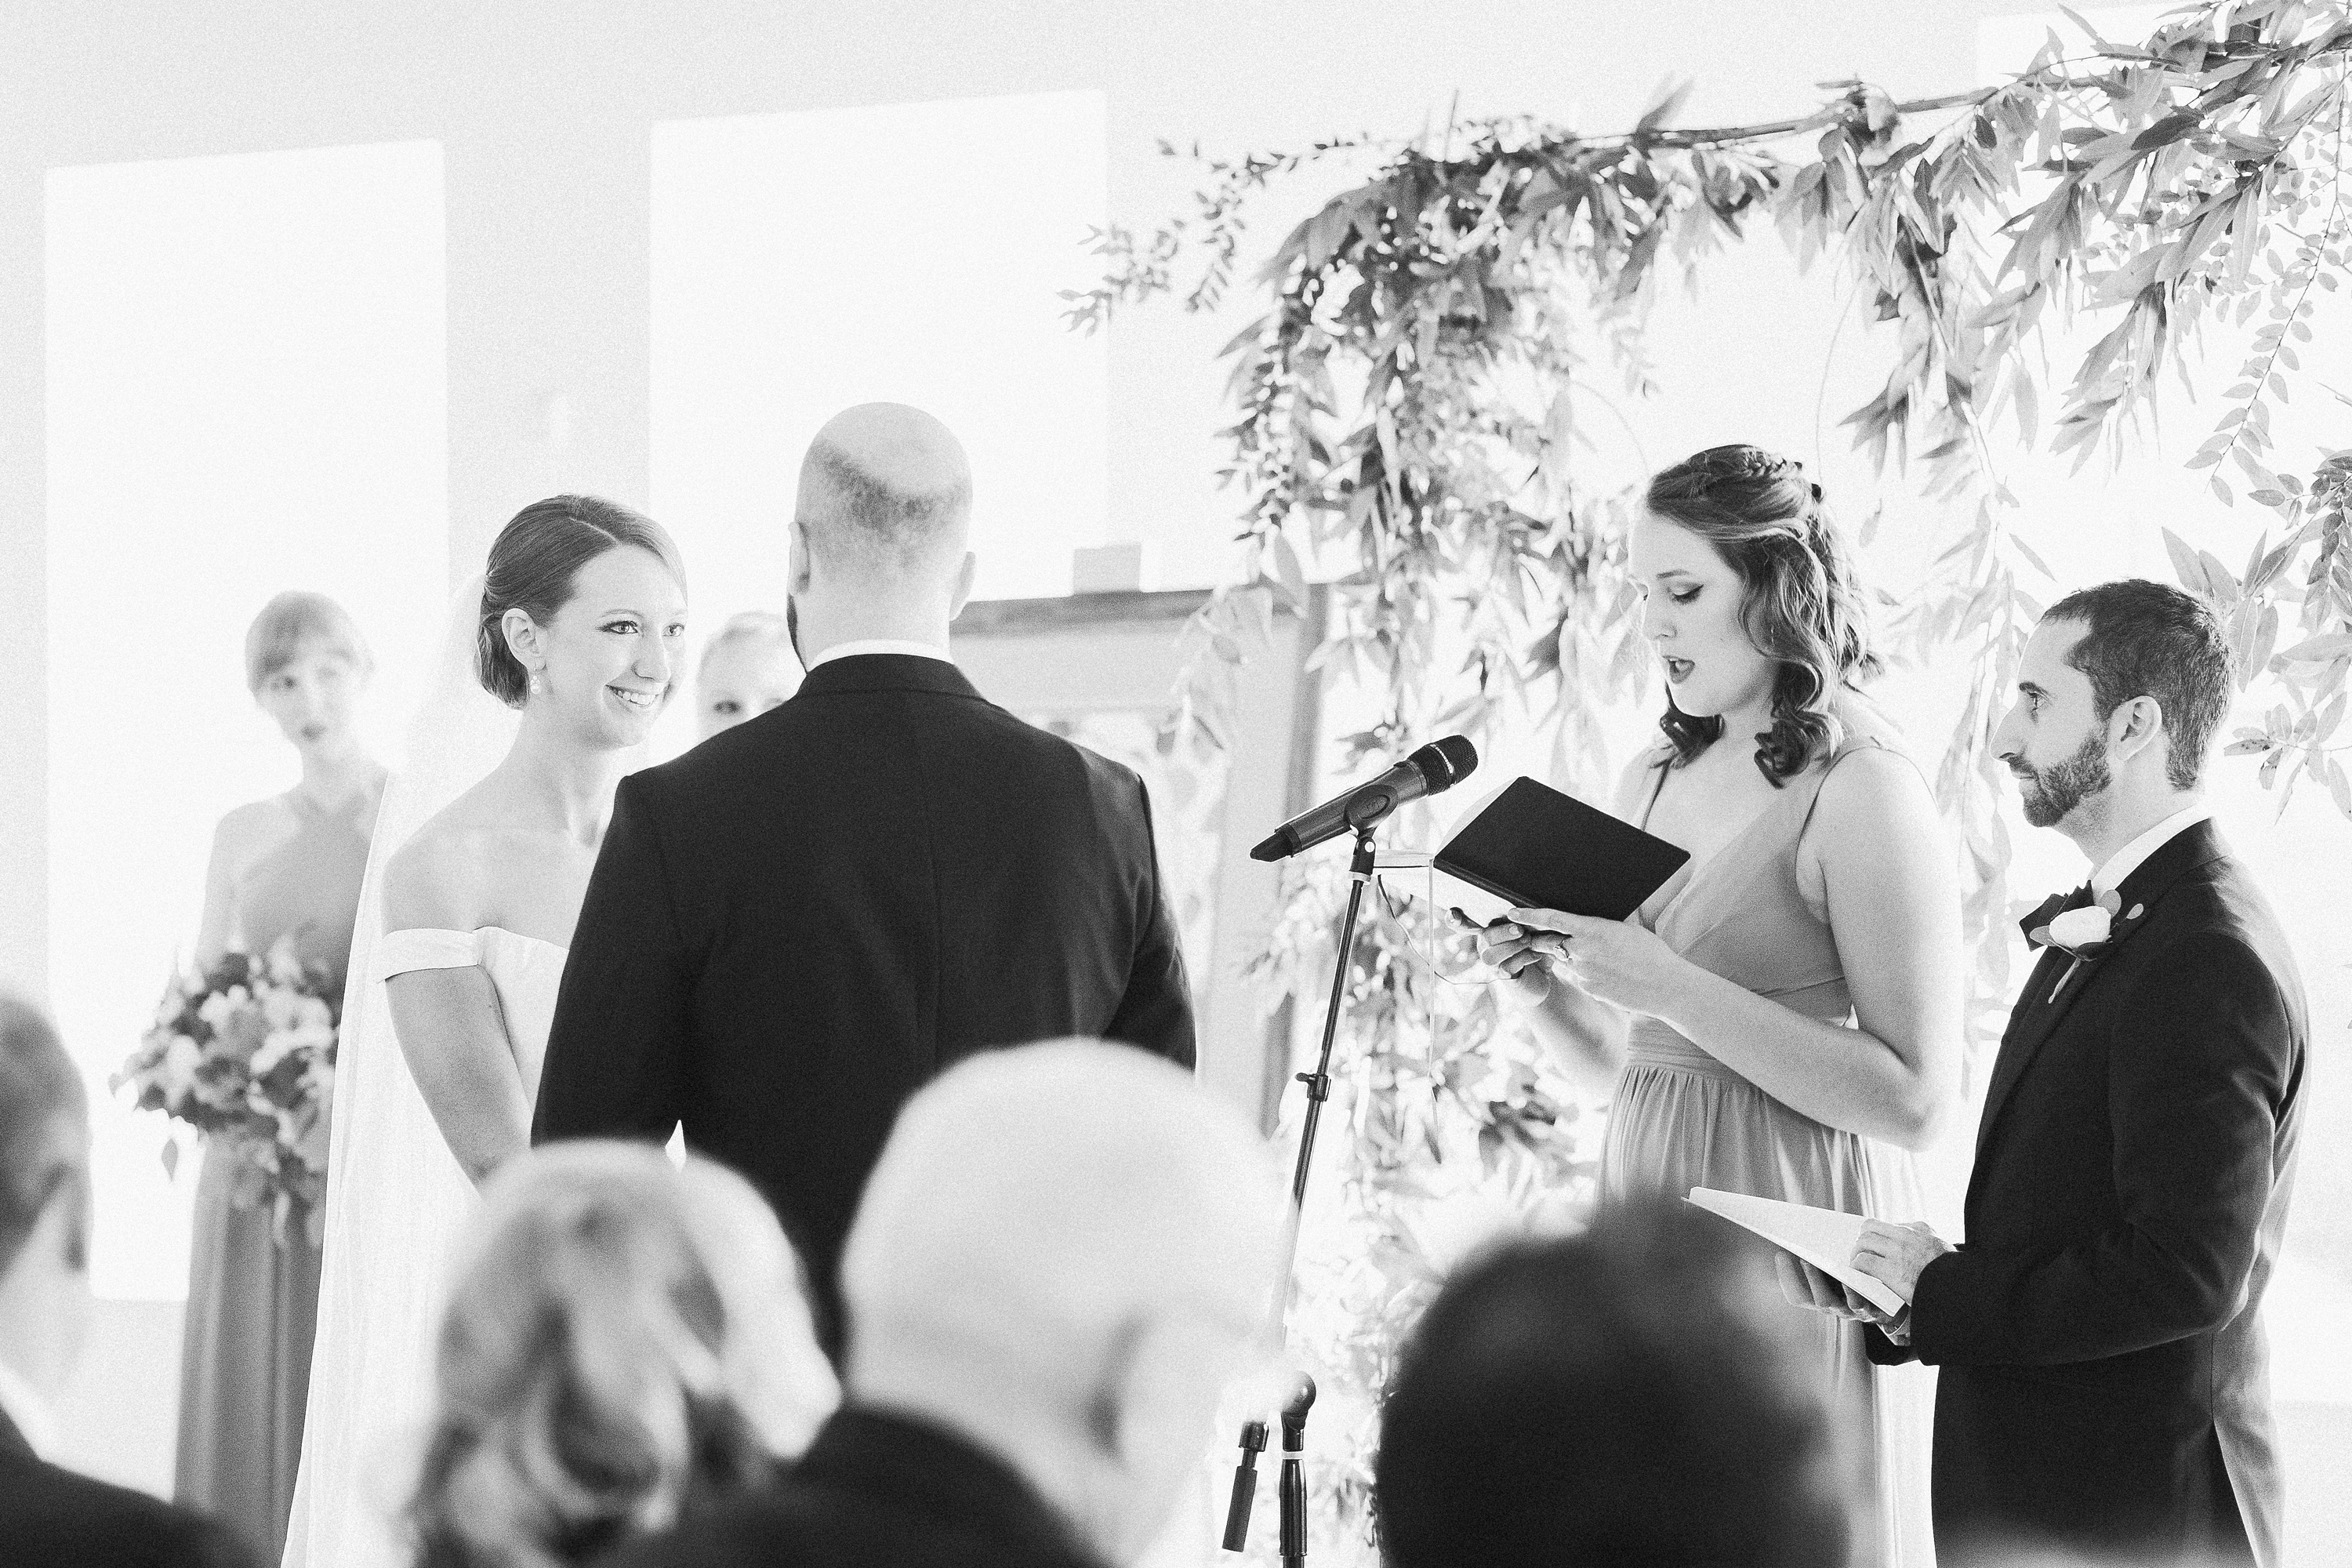 Oxford Exchange Wedding Photographer | © Ailyn La Torre Photography 2019